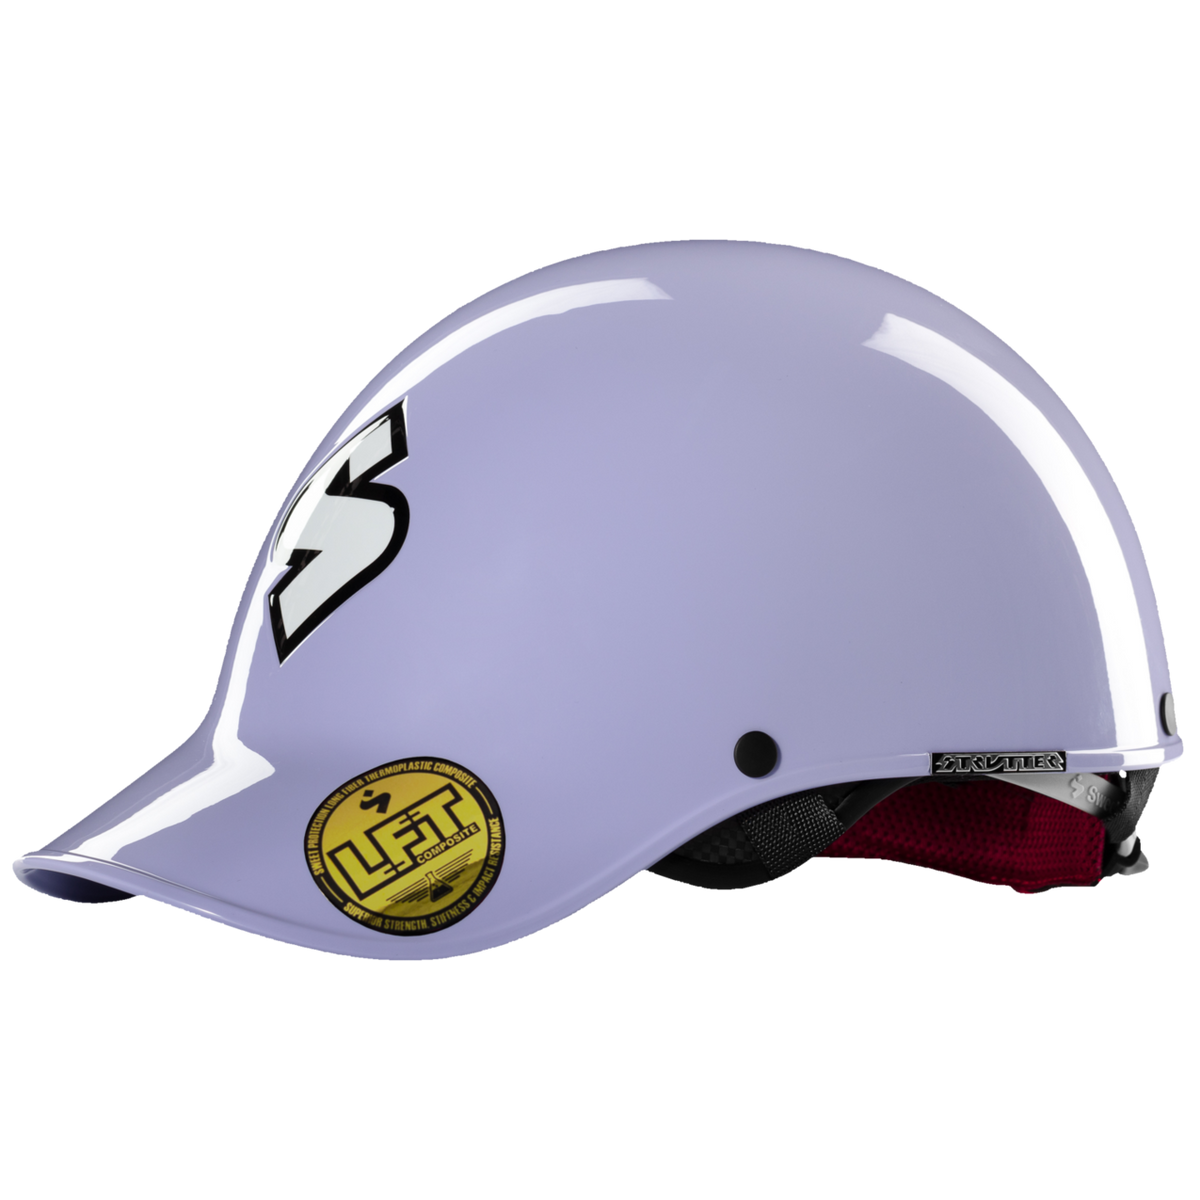 A purple Sweet Strutter Helmet with a logo on it.